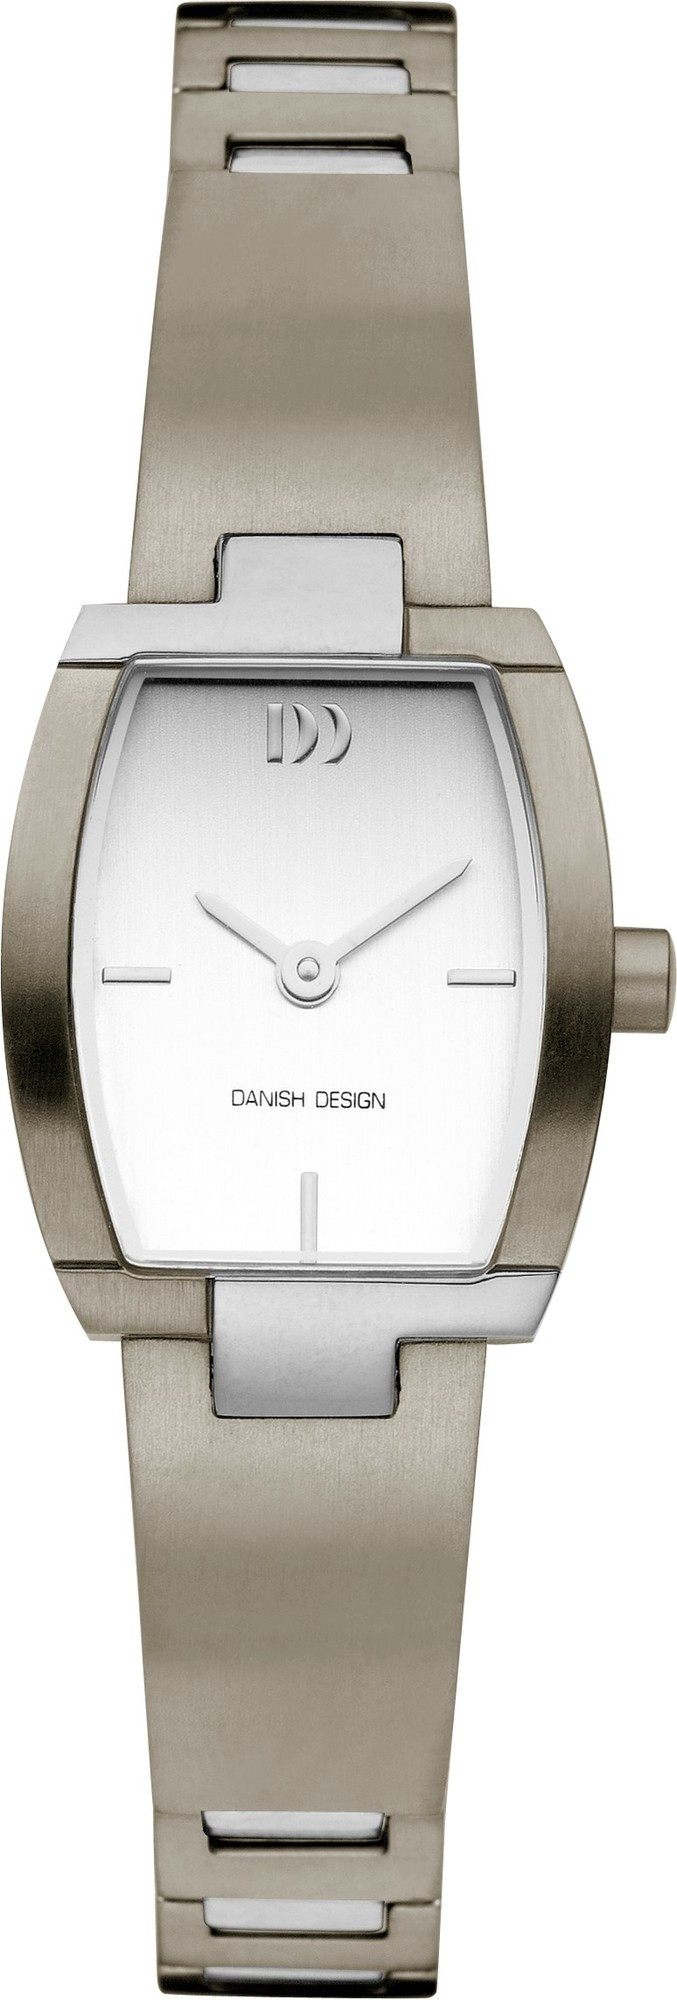 Danish Design Horloge 20/25 mm Titanium IV62Q908 1